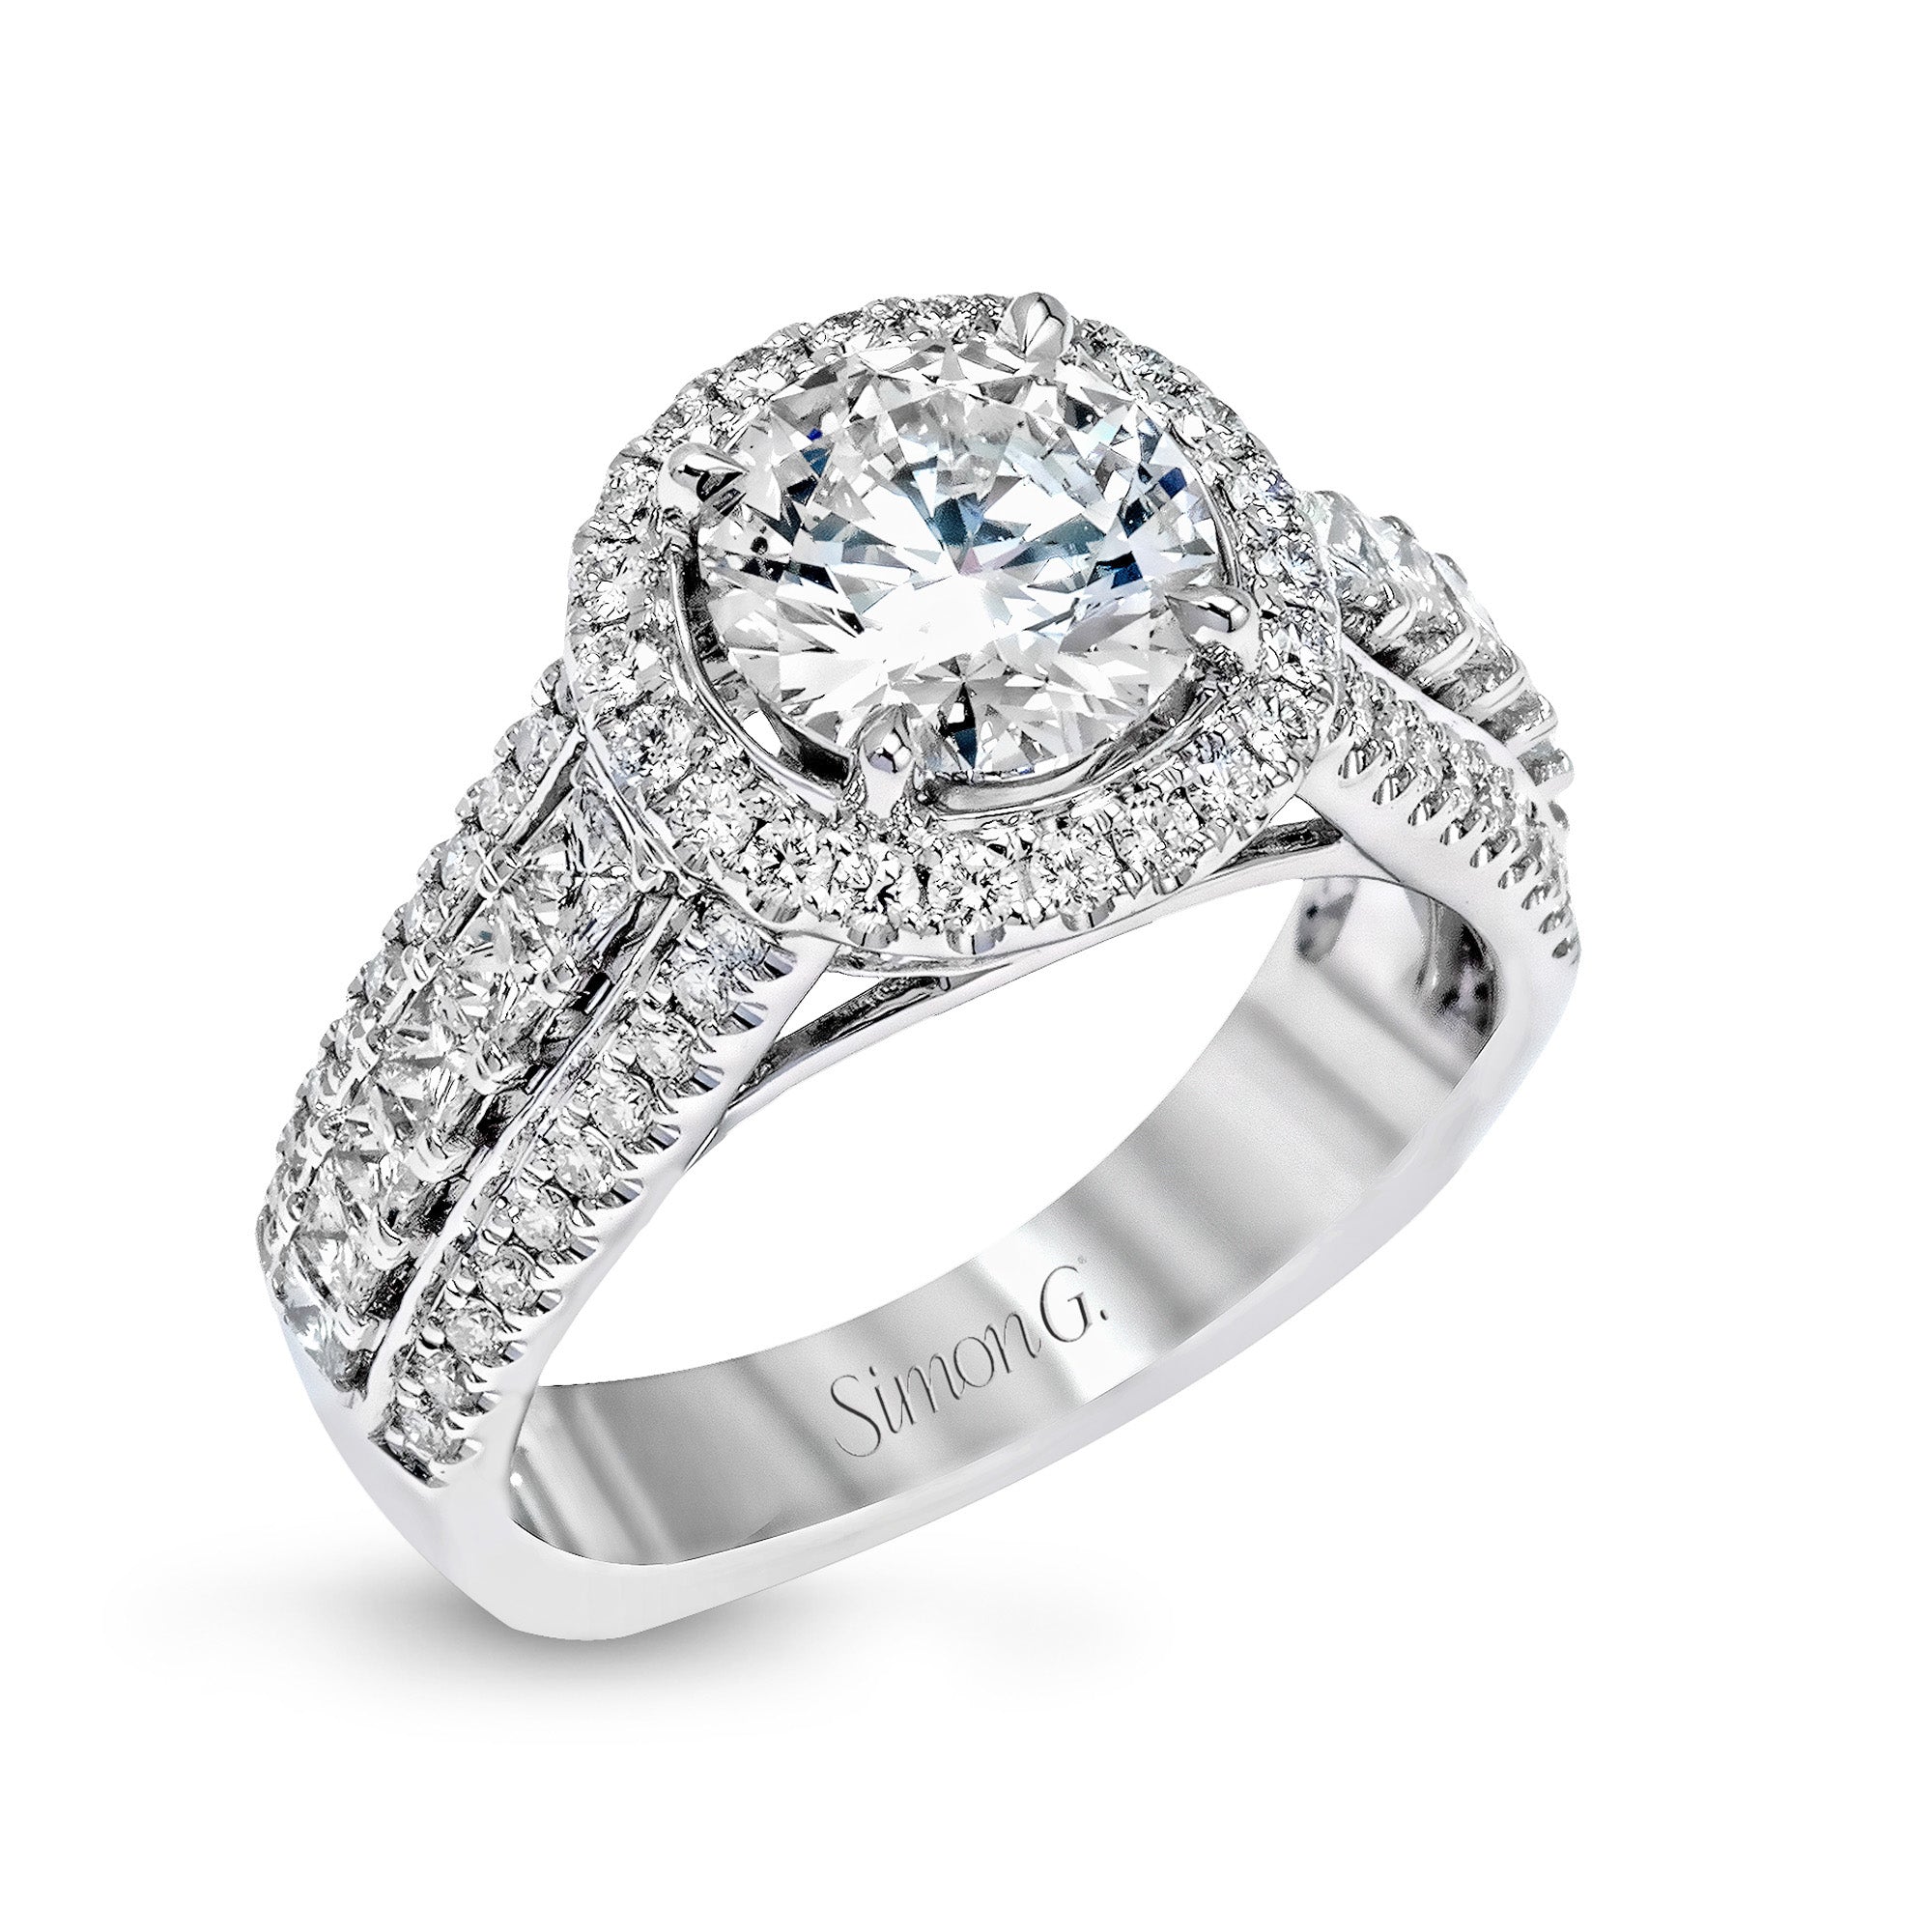 Simon G 18K White Gold Diamond Engagement Ring